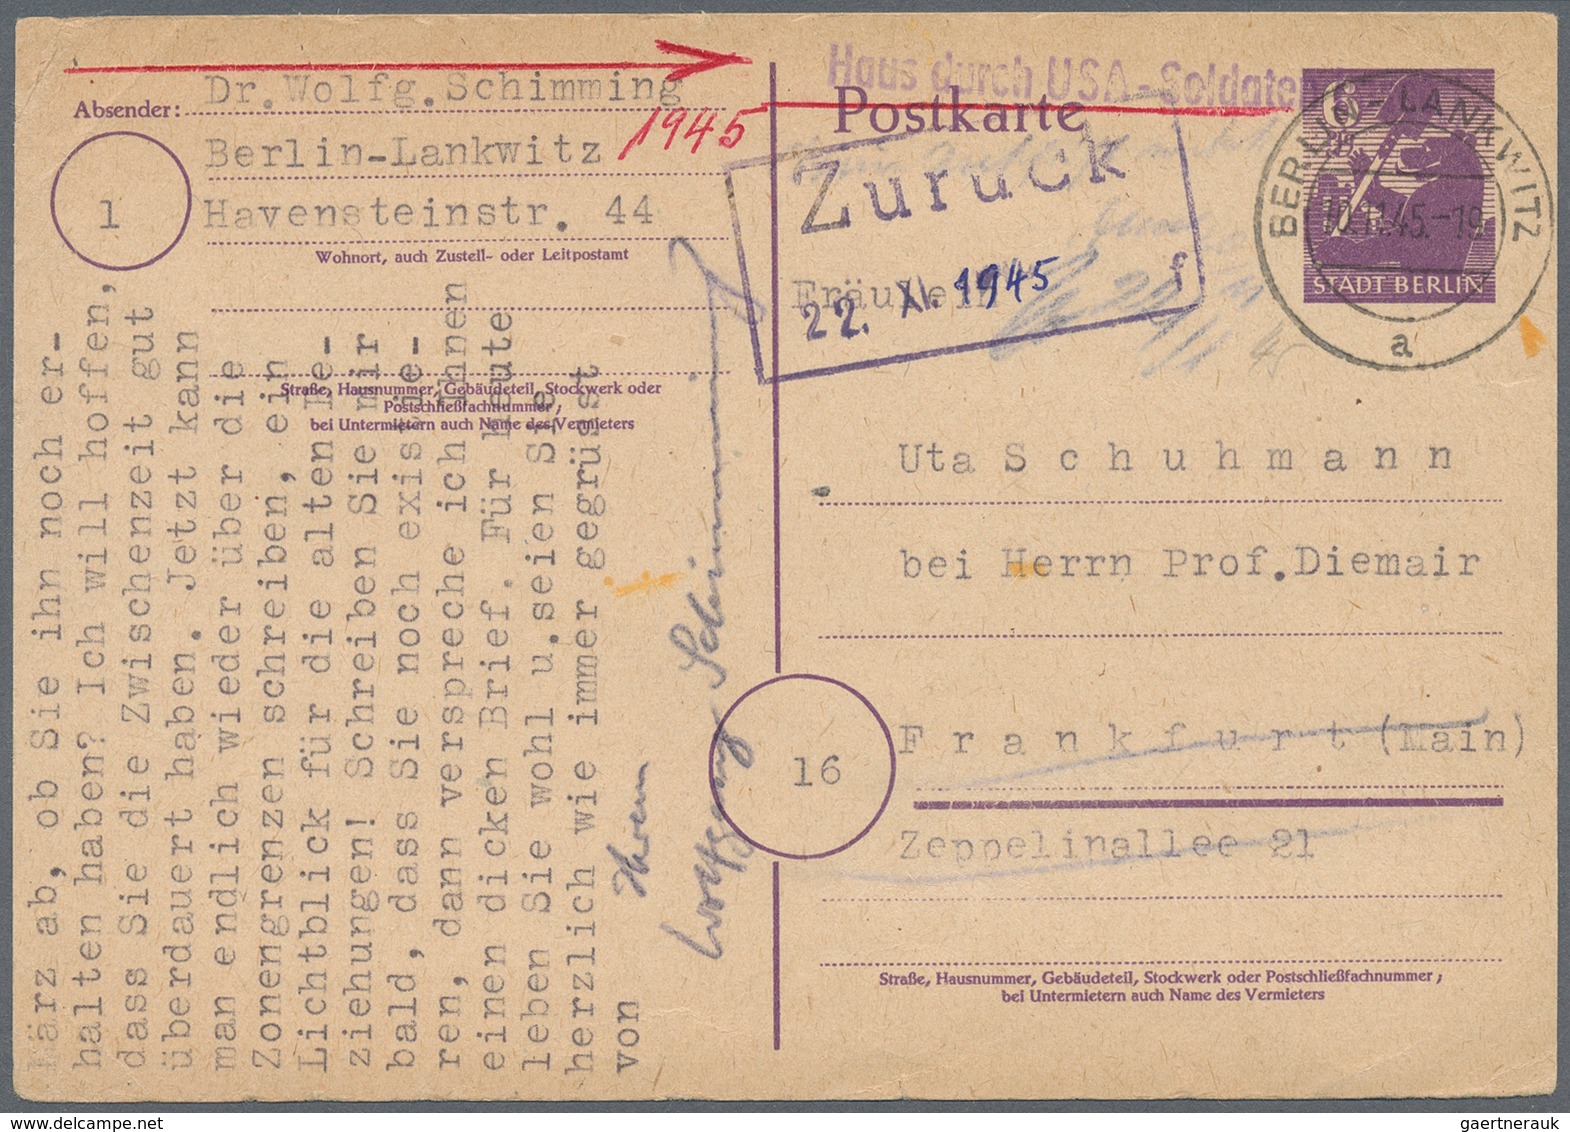 32456 Berlin - Vorläufer: 1945/53 (ca.), Schöner Posten von ca. 40 Nachkriegs-Belegen BERLIN, meist ehemal